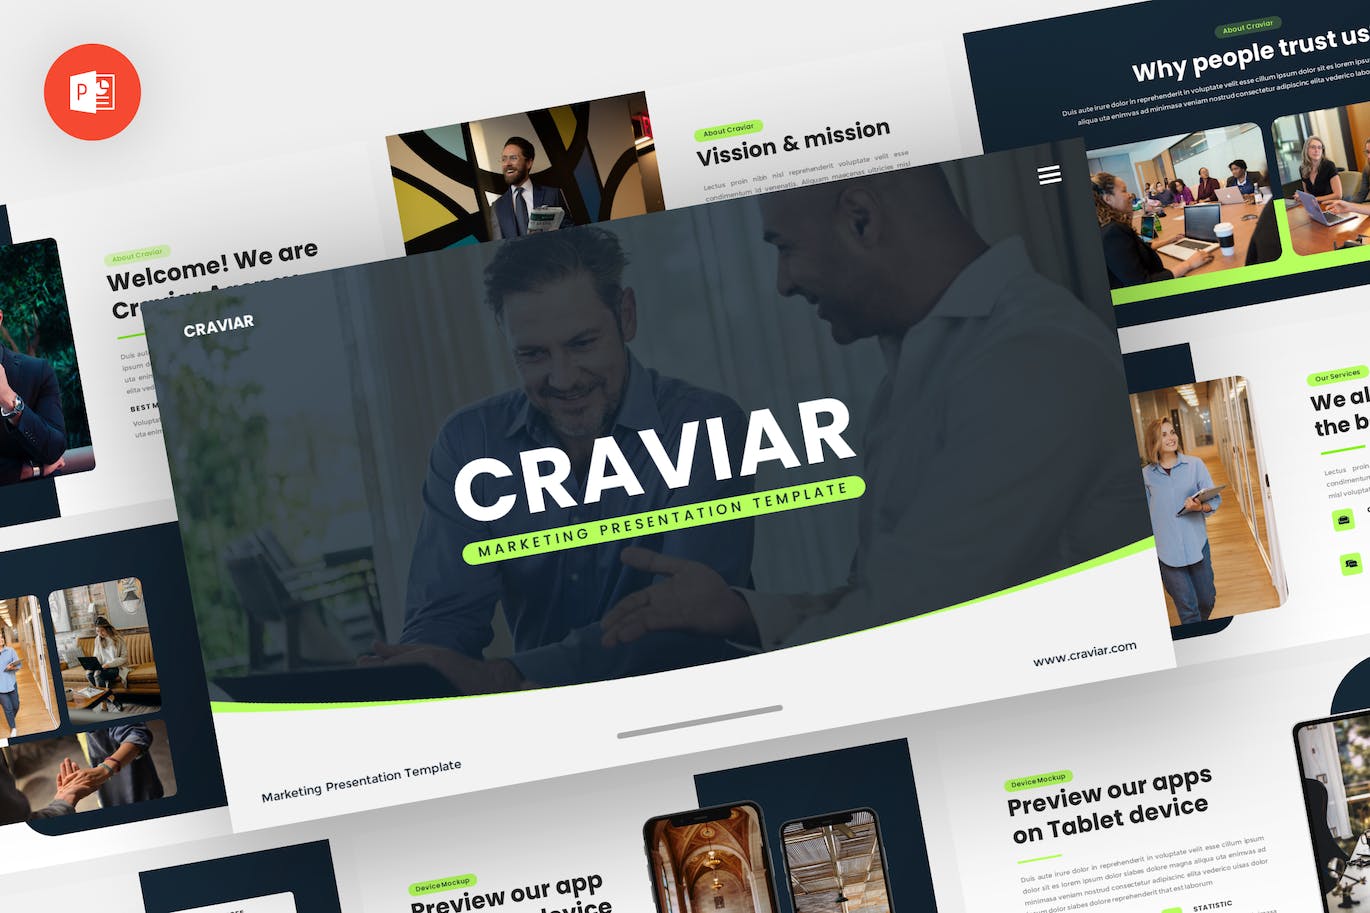 市场营销PPT幻灯片模板 Craviar – Marketing Powerpoint Template 幻灯图表 第1张